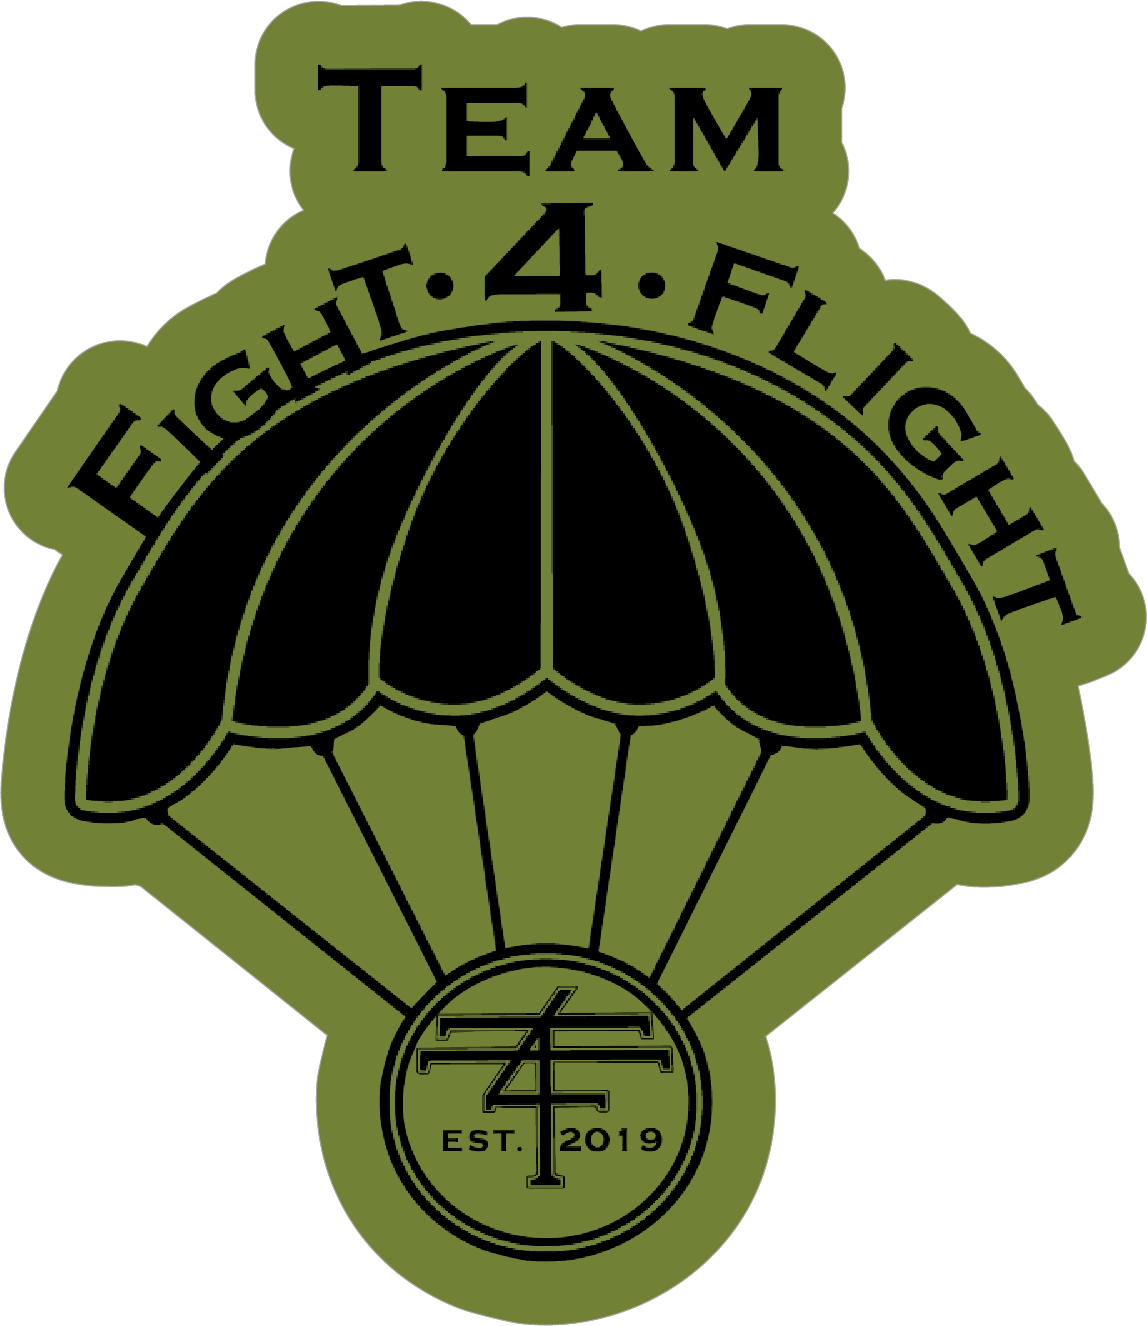 Team Fight 4 Flight Original Sticker